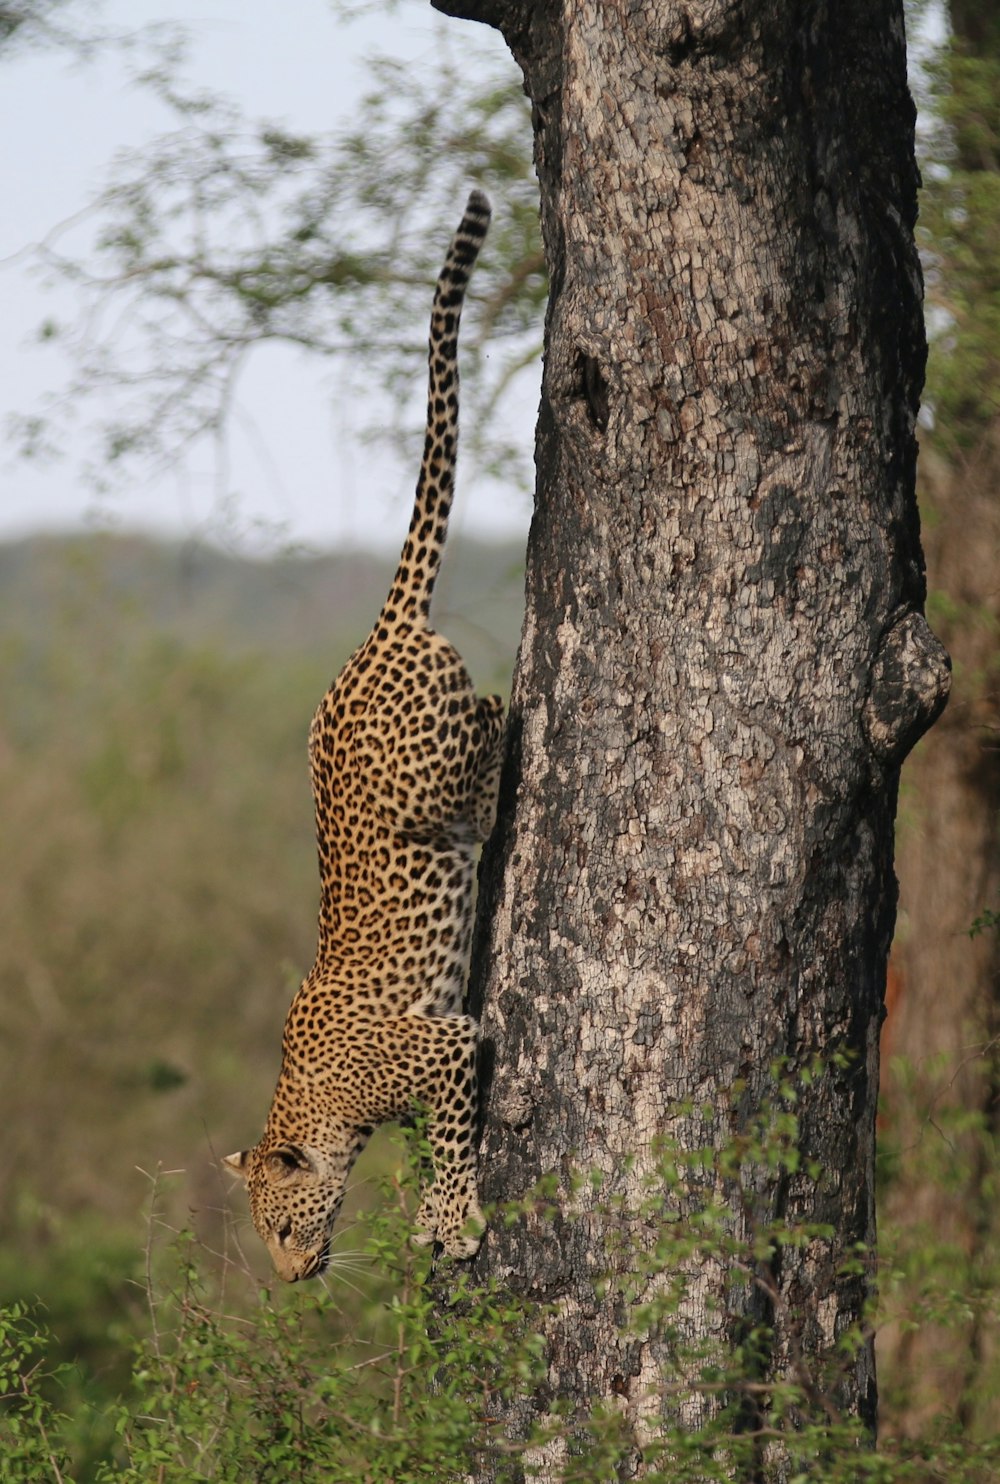 loepard climbing down on tree during daytime